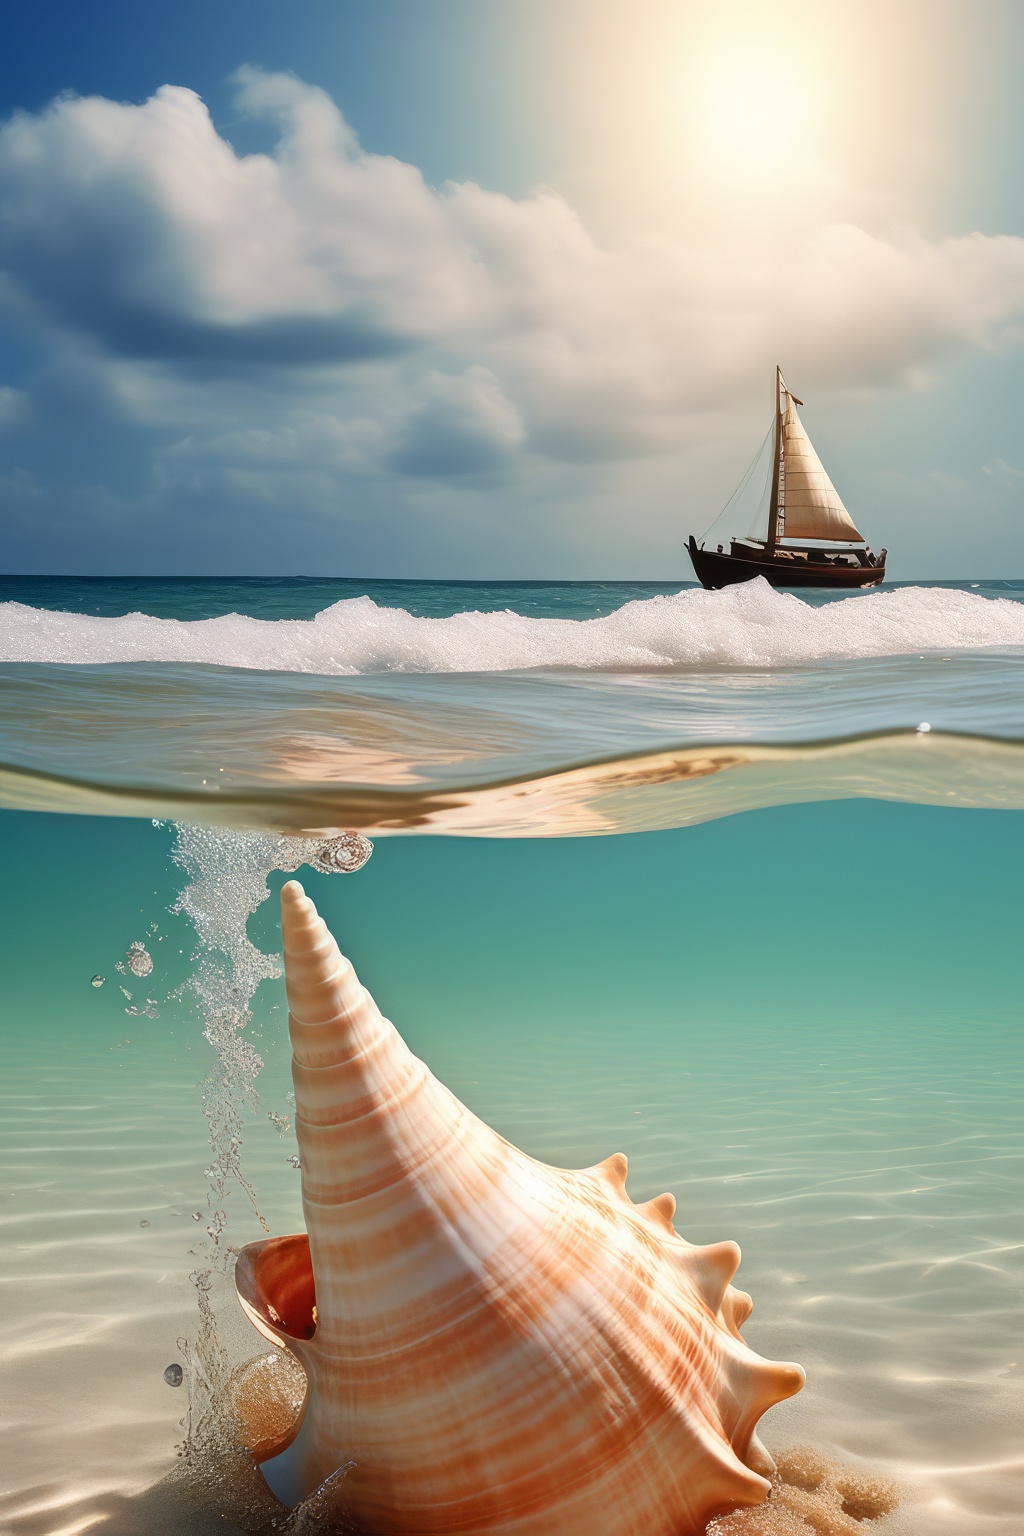 南国の綺麗な海に沈む小さな巻貝＆海中から見える青い空と小舟の写真風な無料画像素材